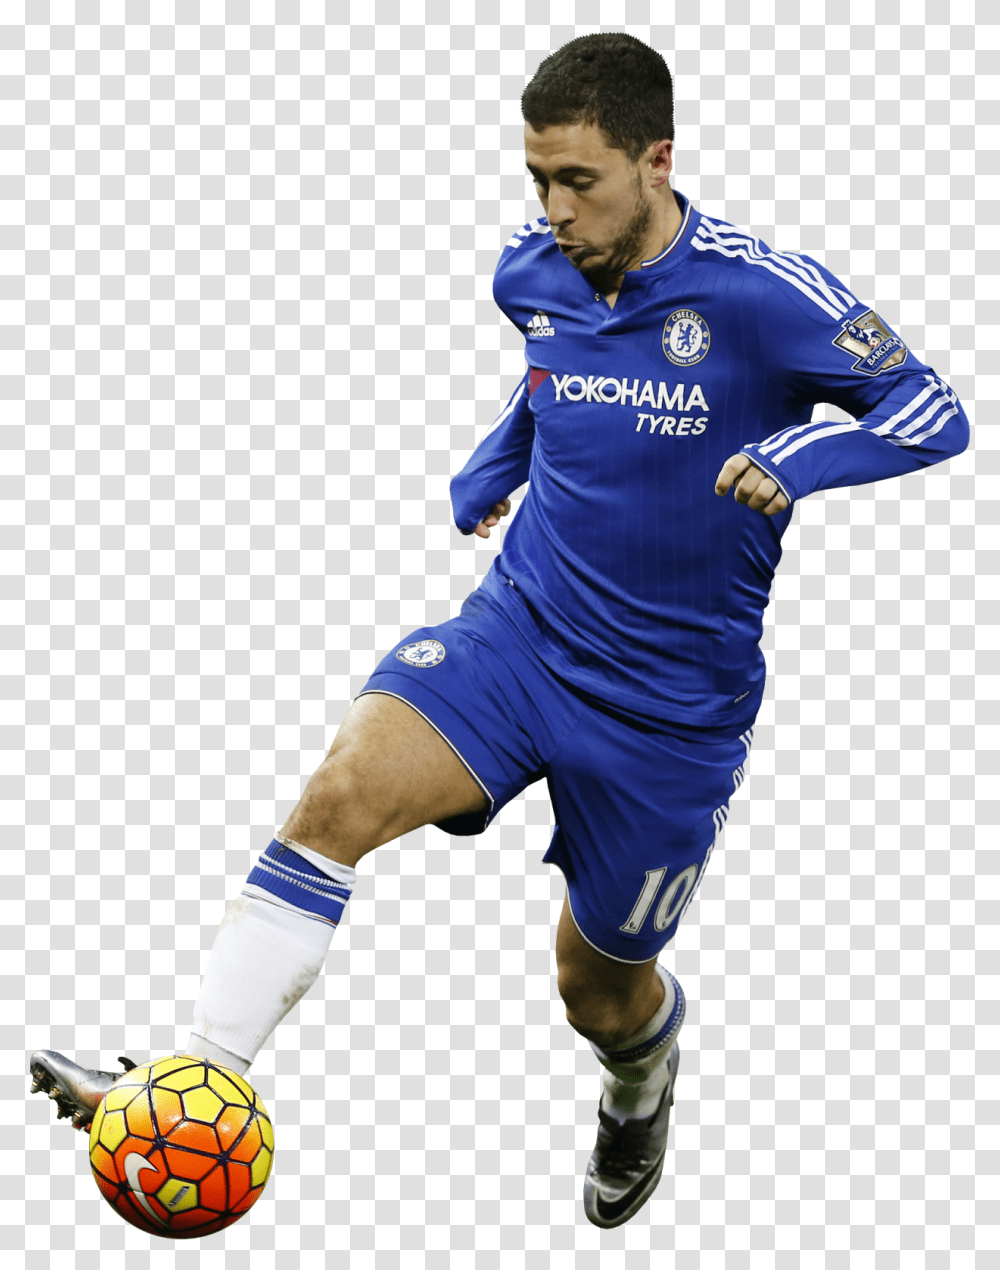 Eden Hazardrender Soccer Player, Person, Sphere, Soccer Ball Transparent Png